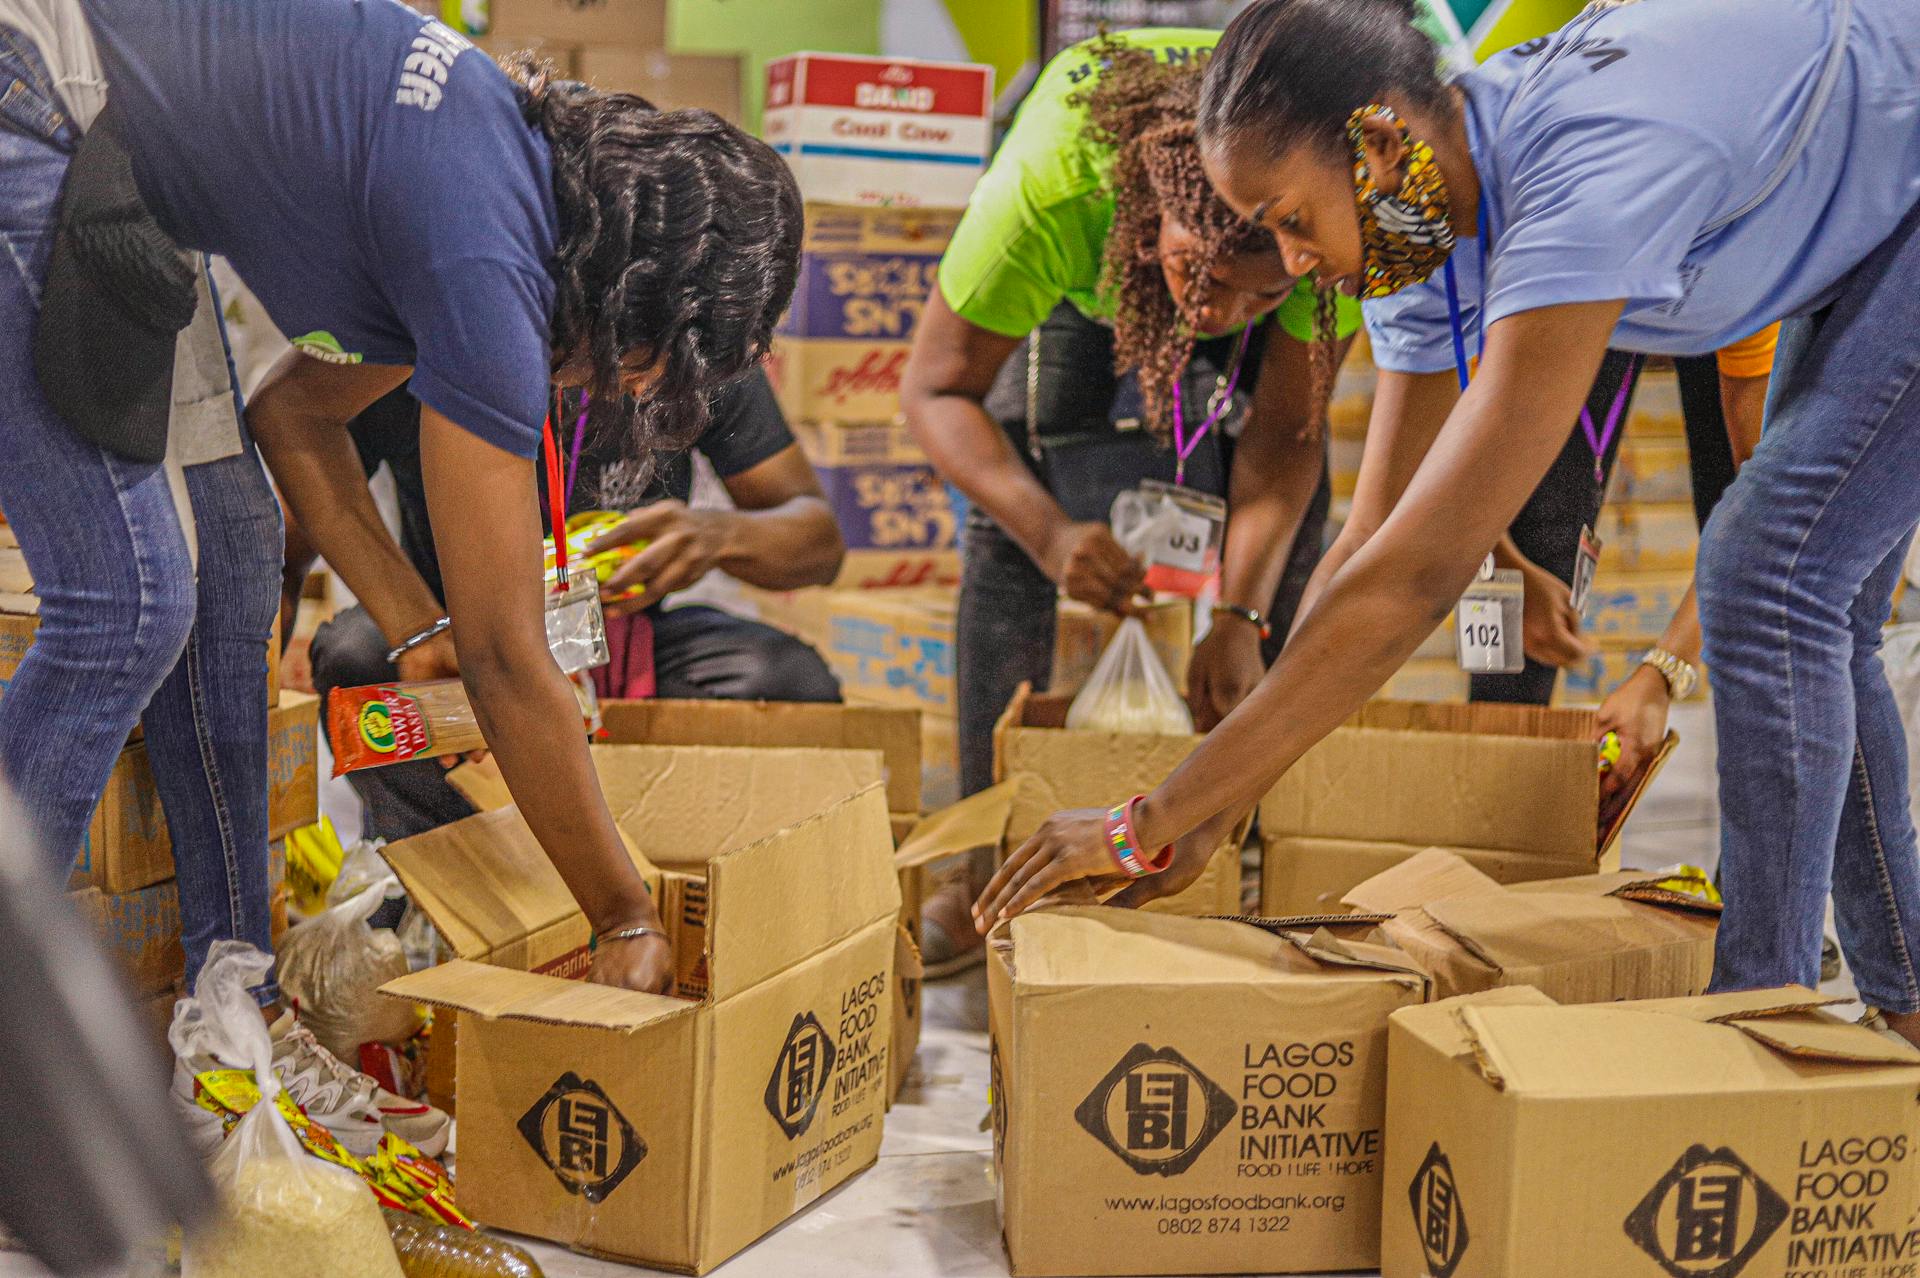 Voluntarios de un banco de alimentos empaquetando artículos dentro de cajas de cartón | Fuente: Pexels